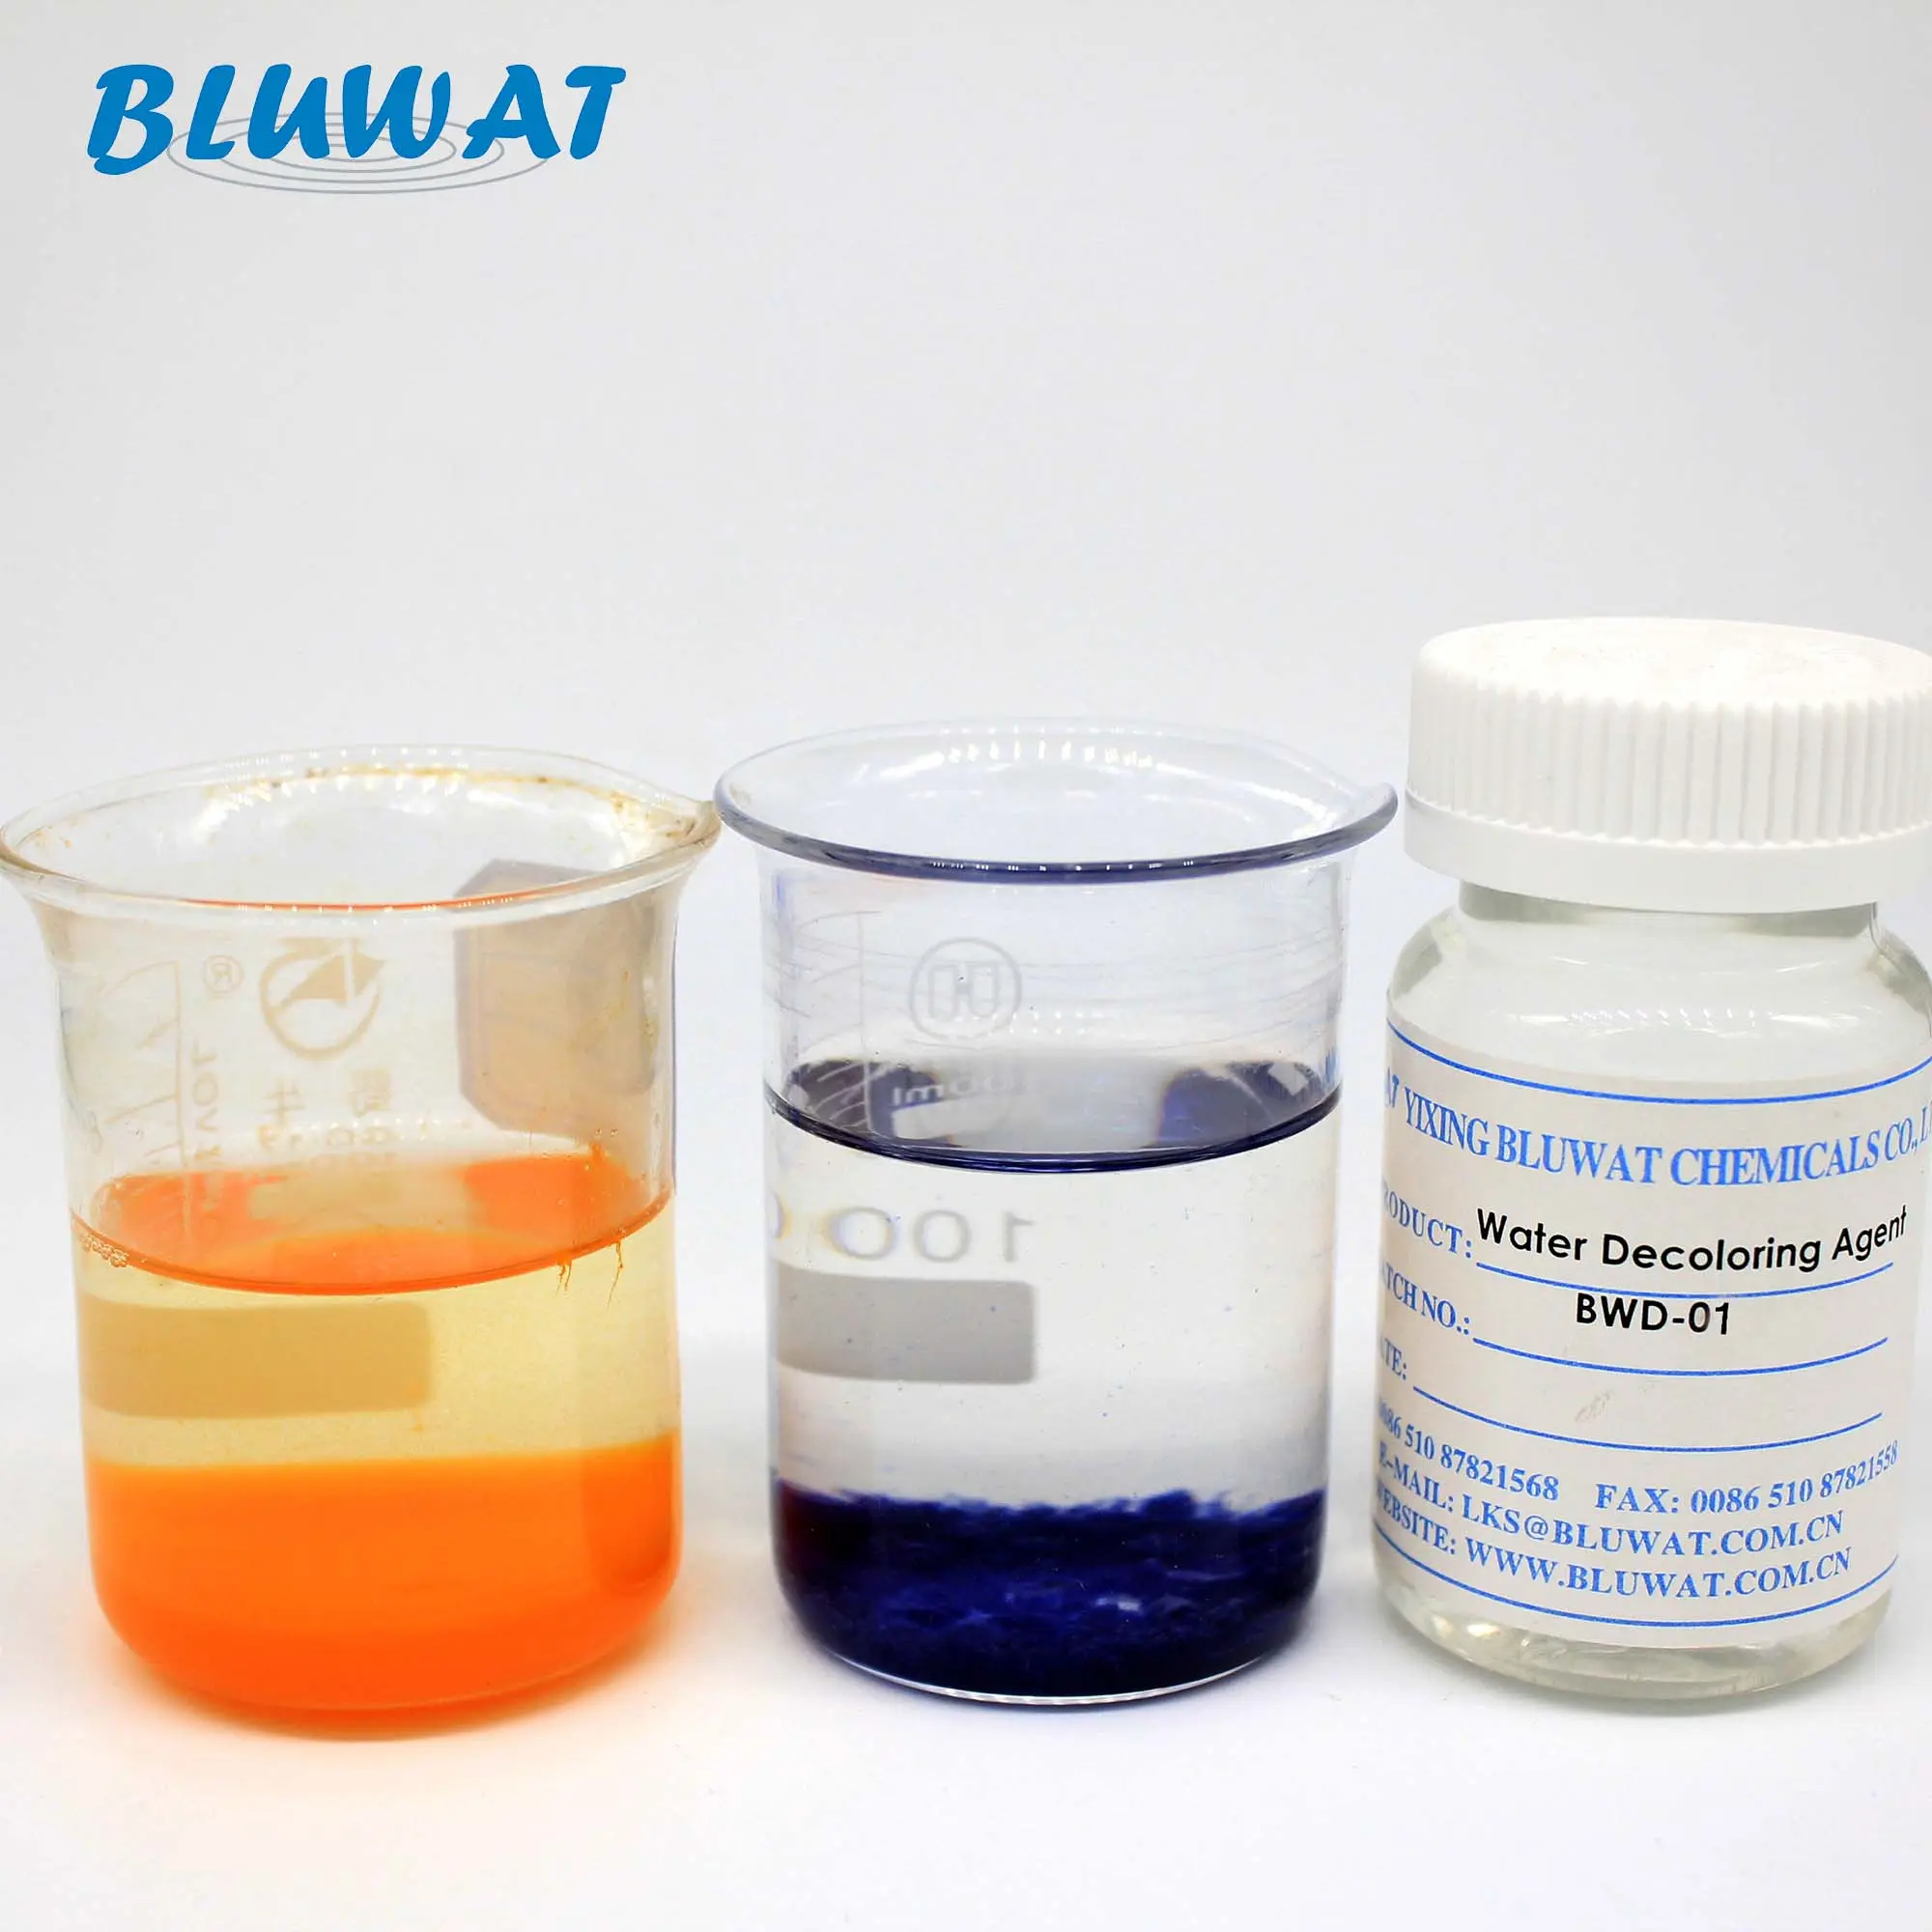 効果脱色化学薬品BWD水処理化学薬品